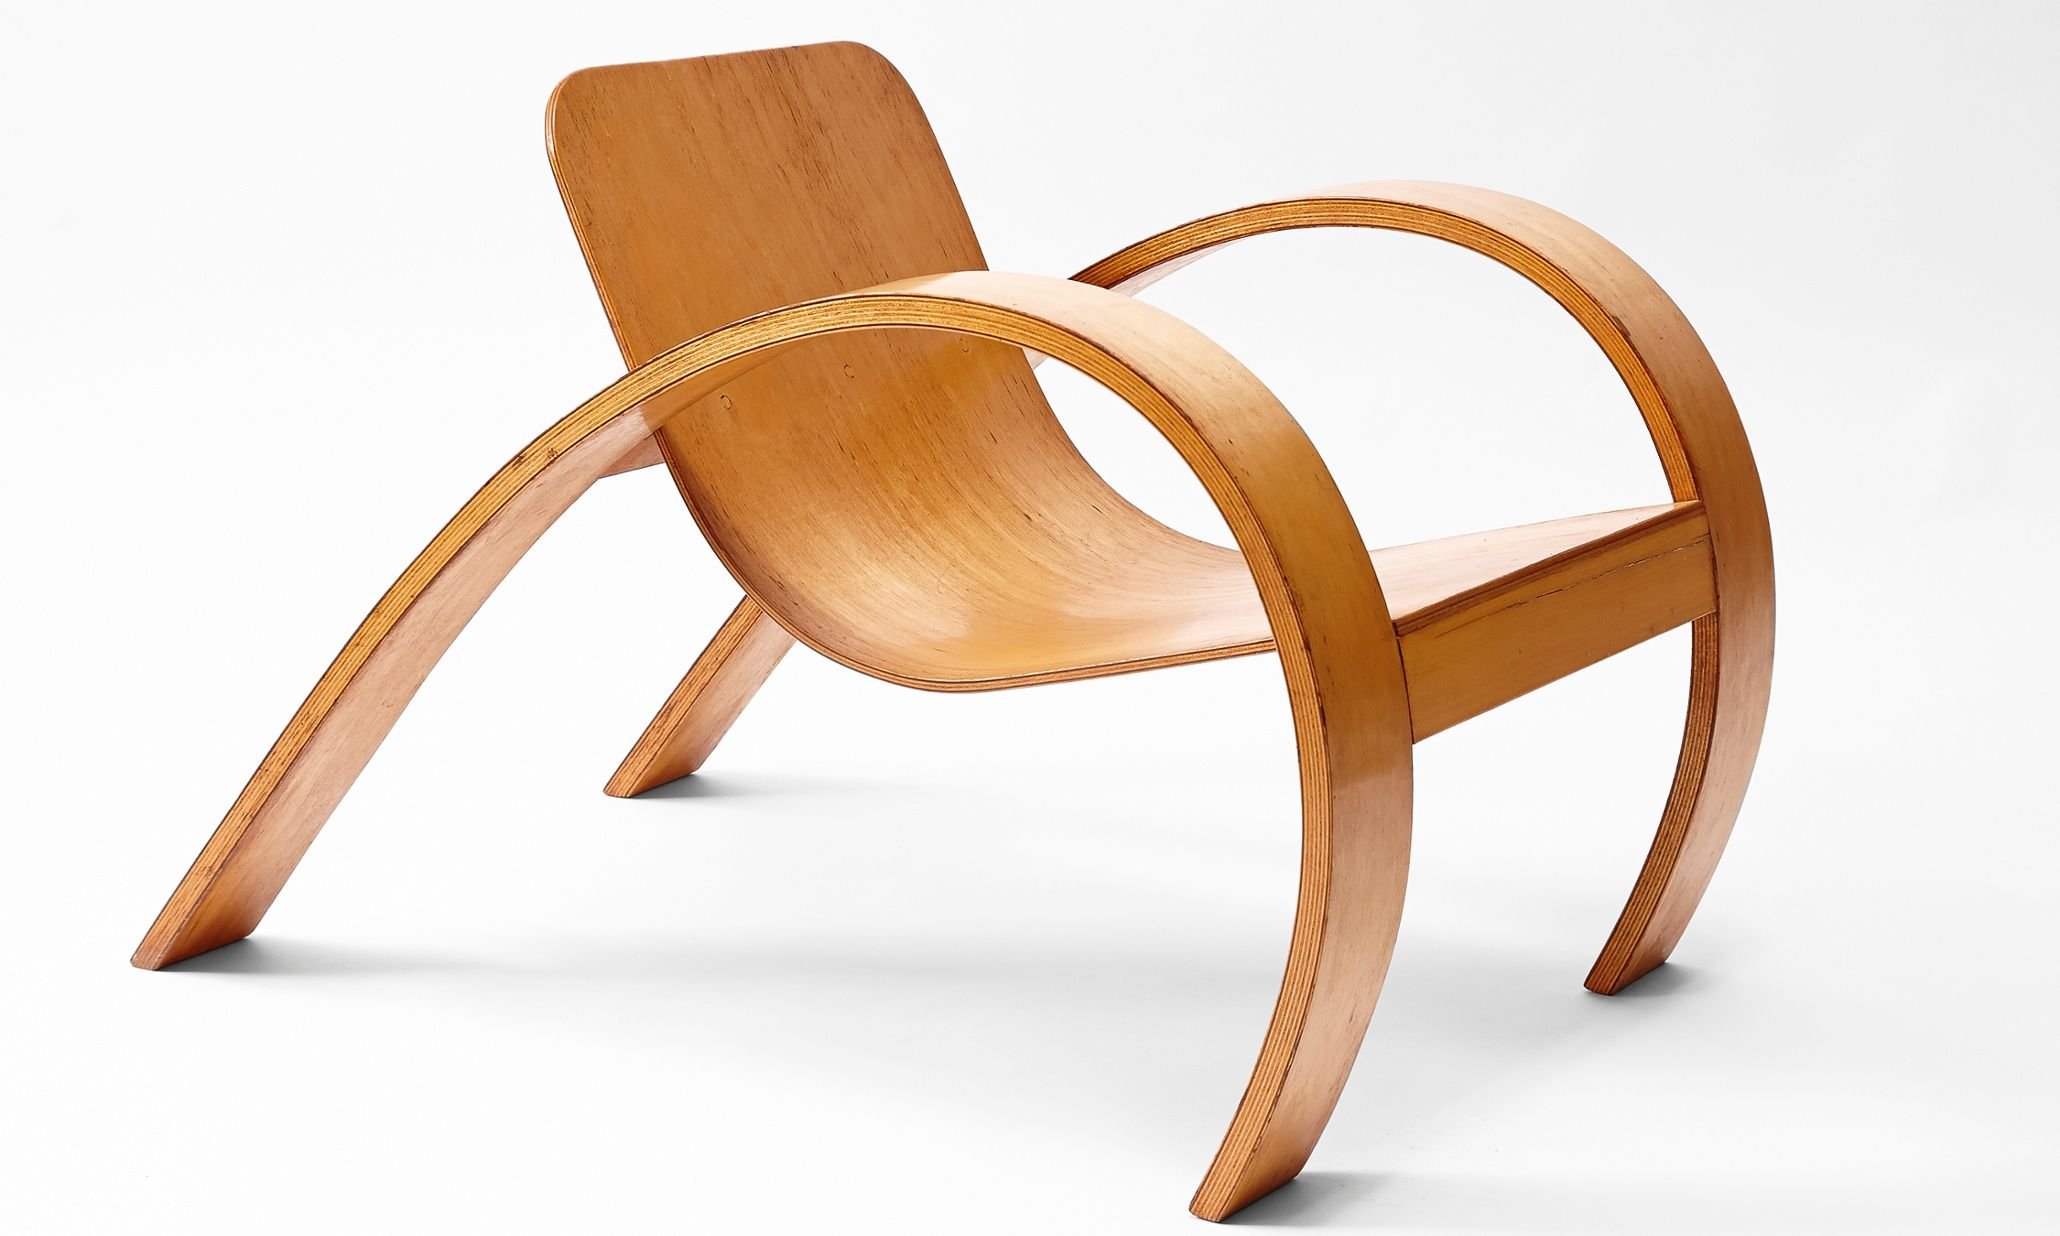 Кресло гнутое. Стул из гнутоклееной фанеры новый стиль Вуд 1.031. Мебель из гнуто клиенной фанеры. Гнутоклееная мебель из фанеры. Bentwood кресло.